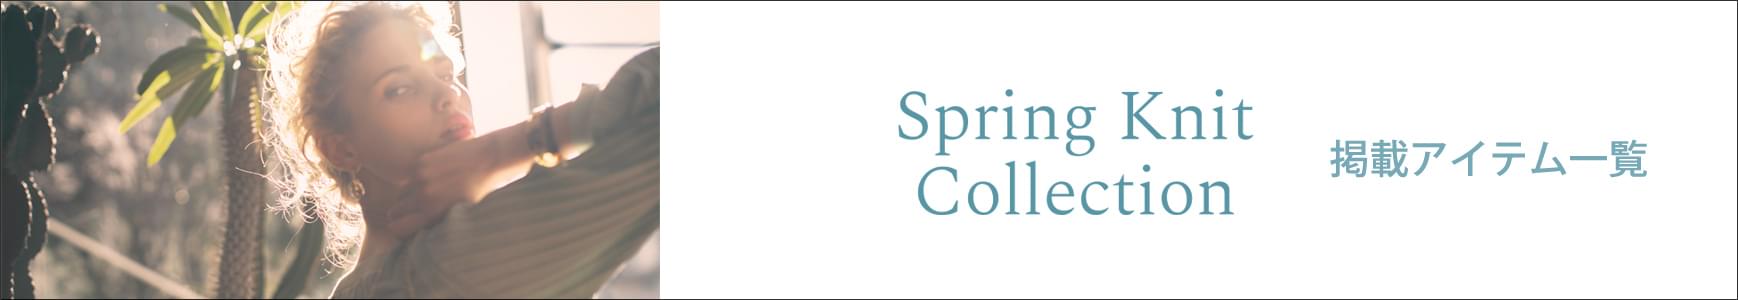 Spring Knit Collection -春ニットの着こなし- 掲載一覧ページ